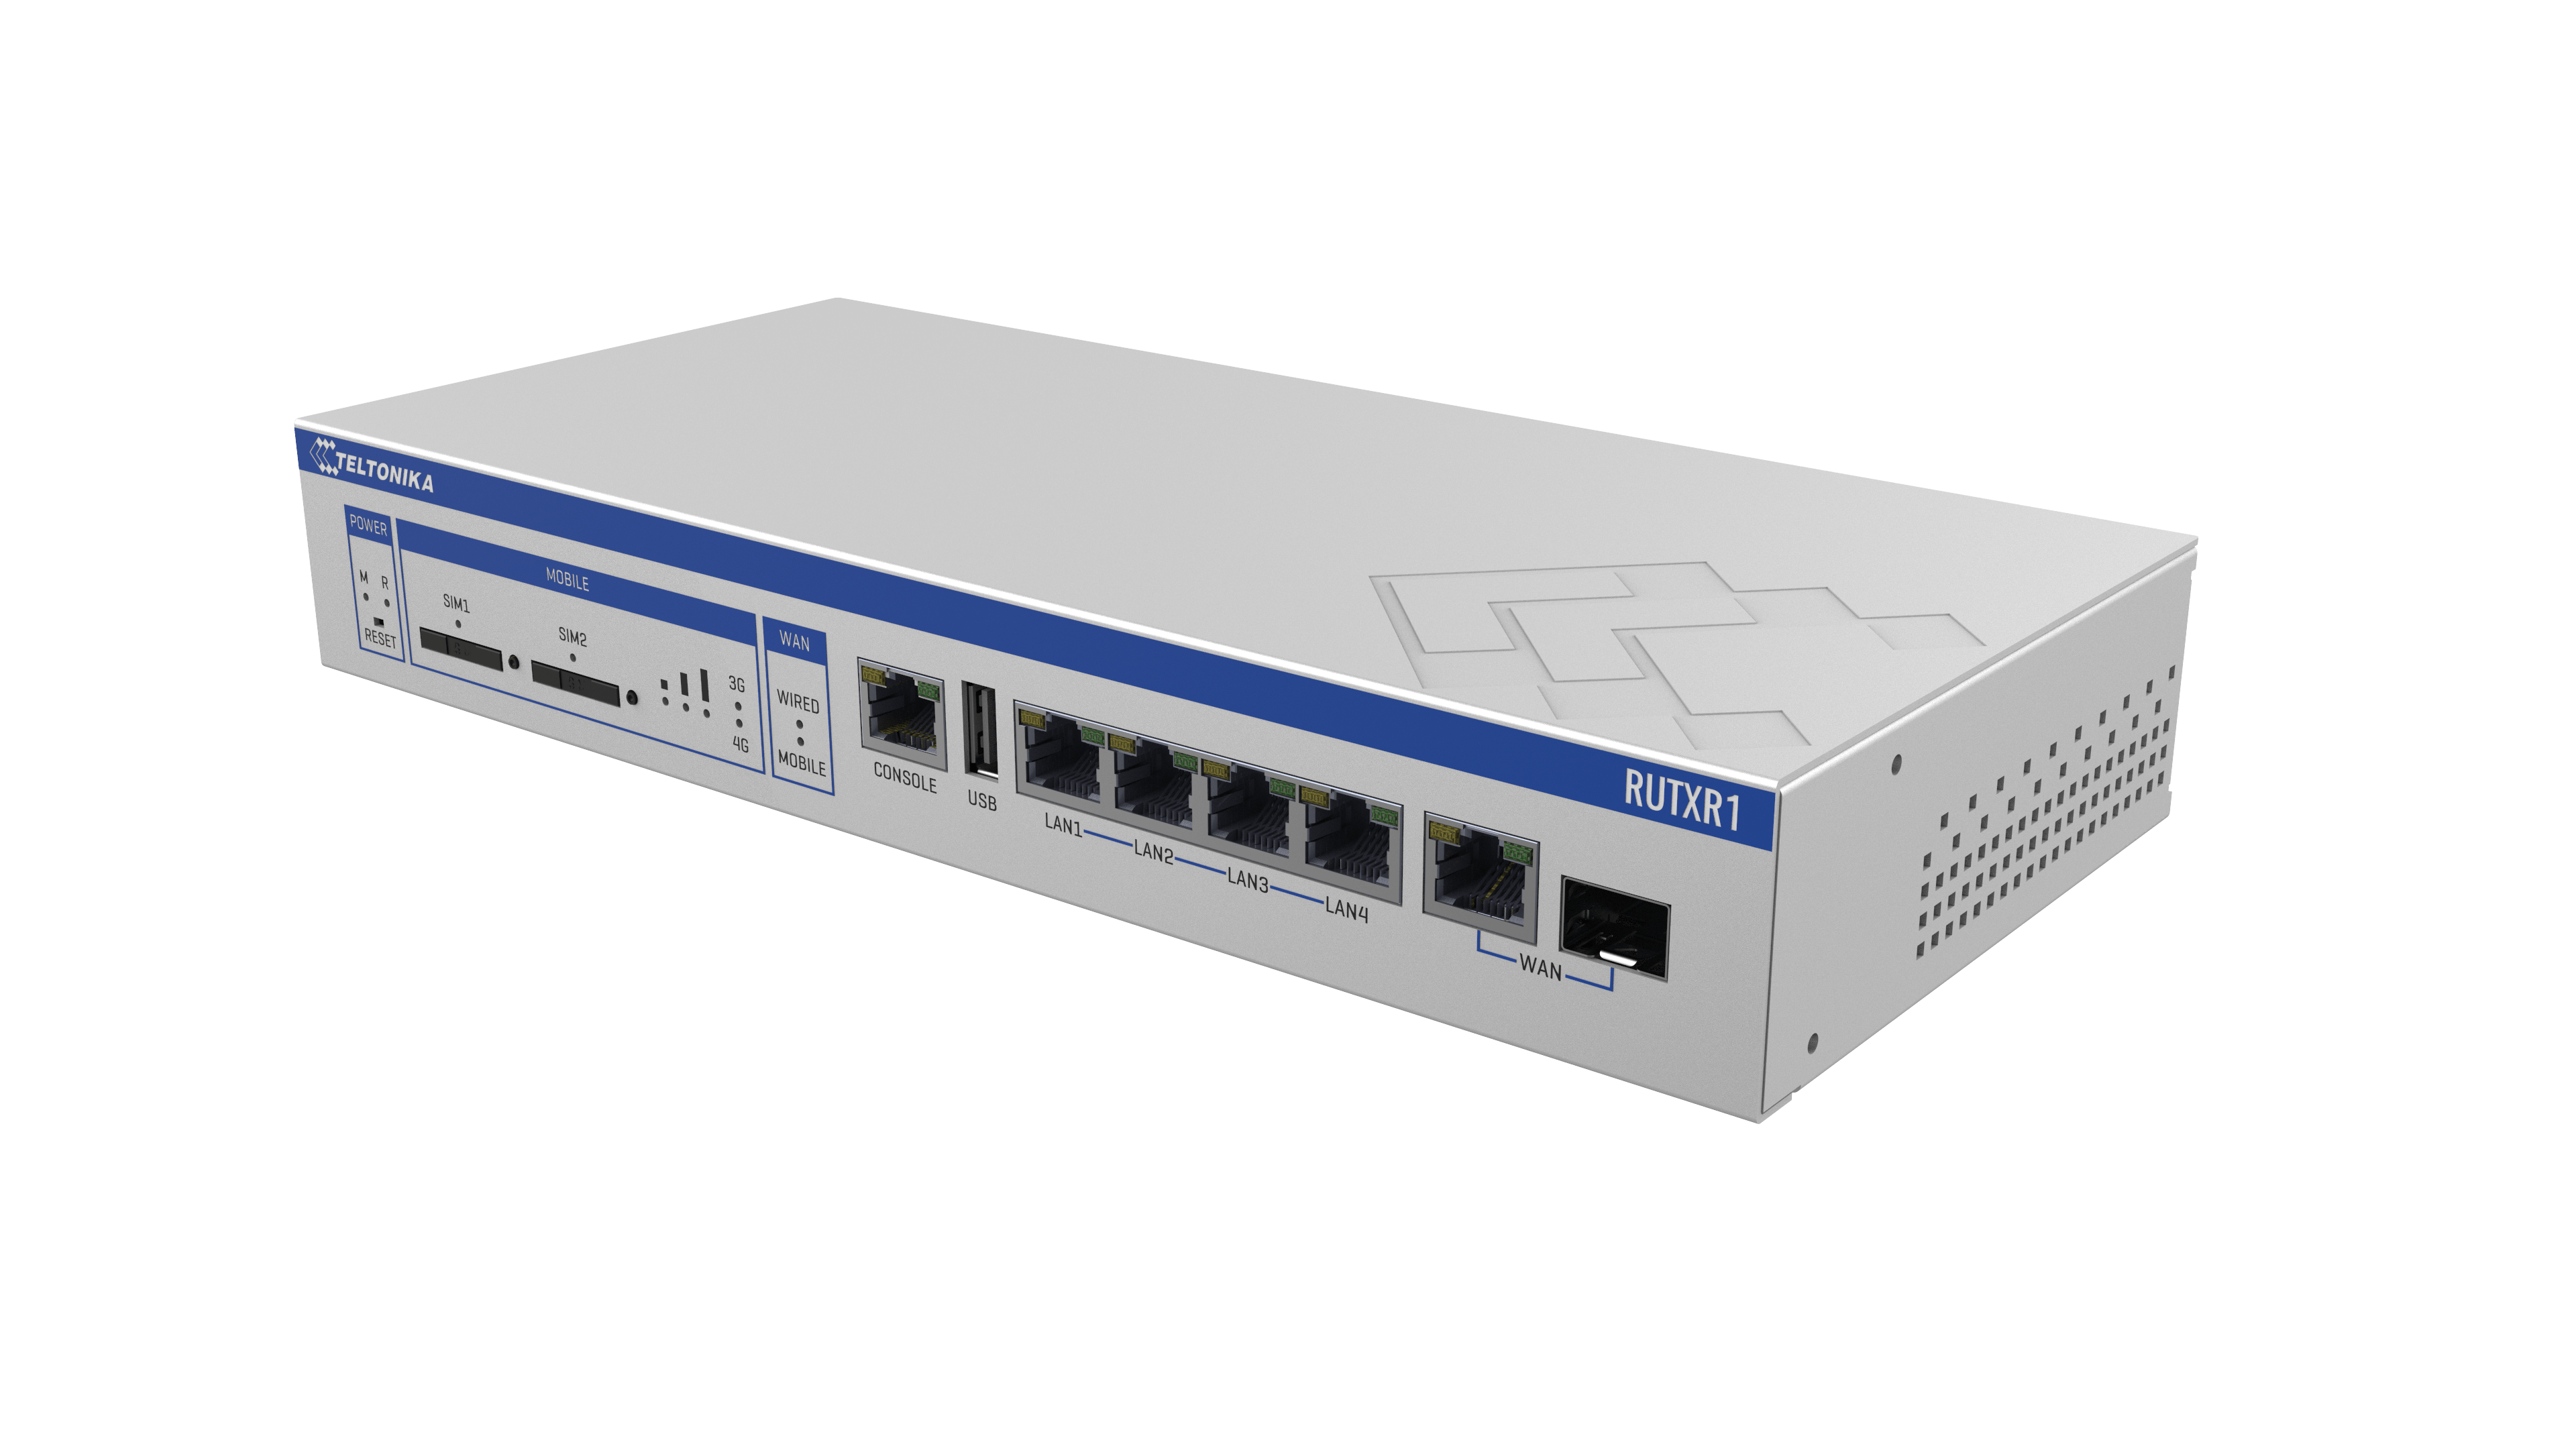 RUTXR1 – SFP/LTE enterprise router for 19” rack mounting